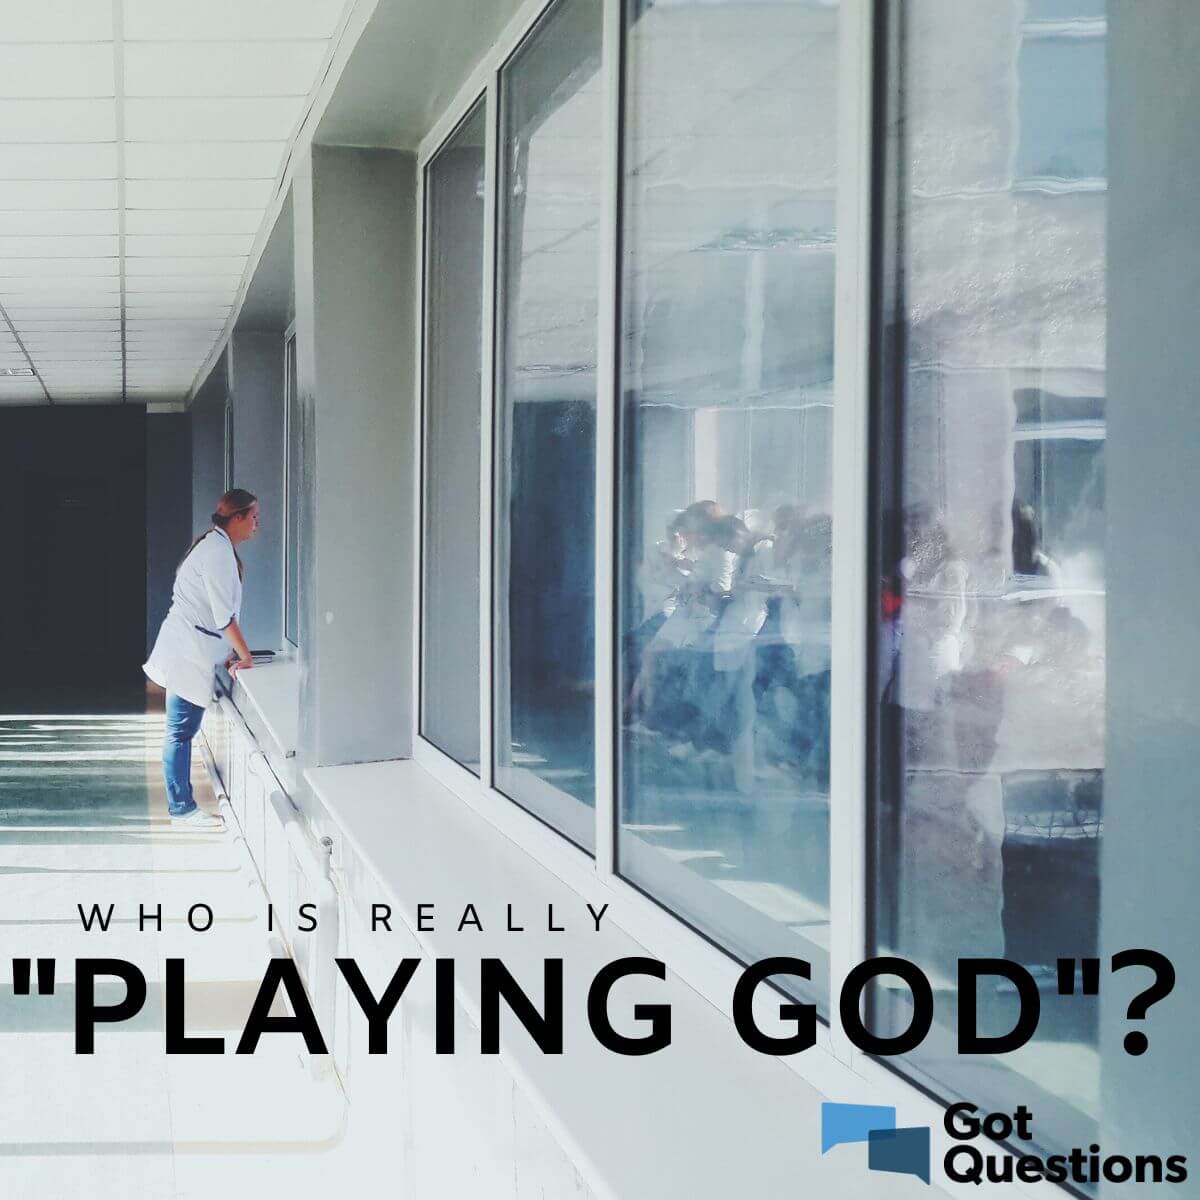 Playing God, playing god 